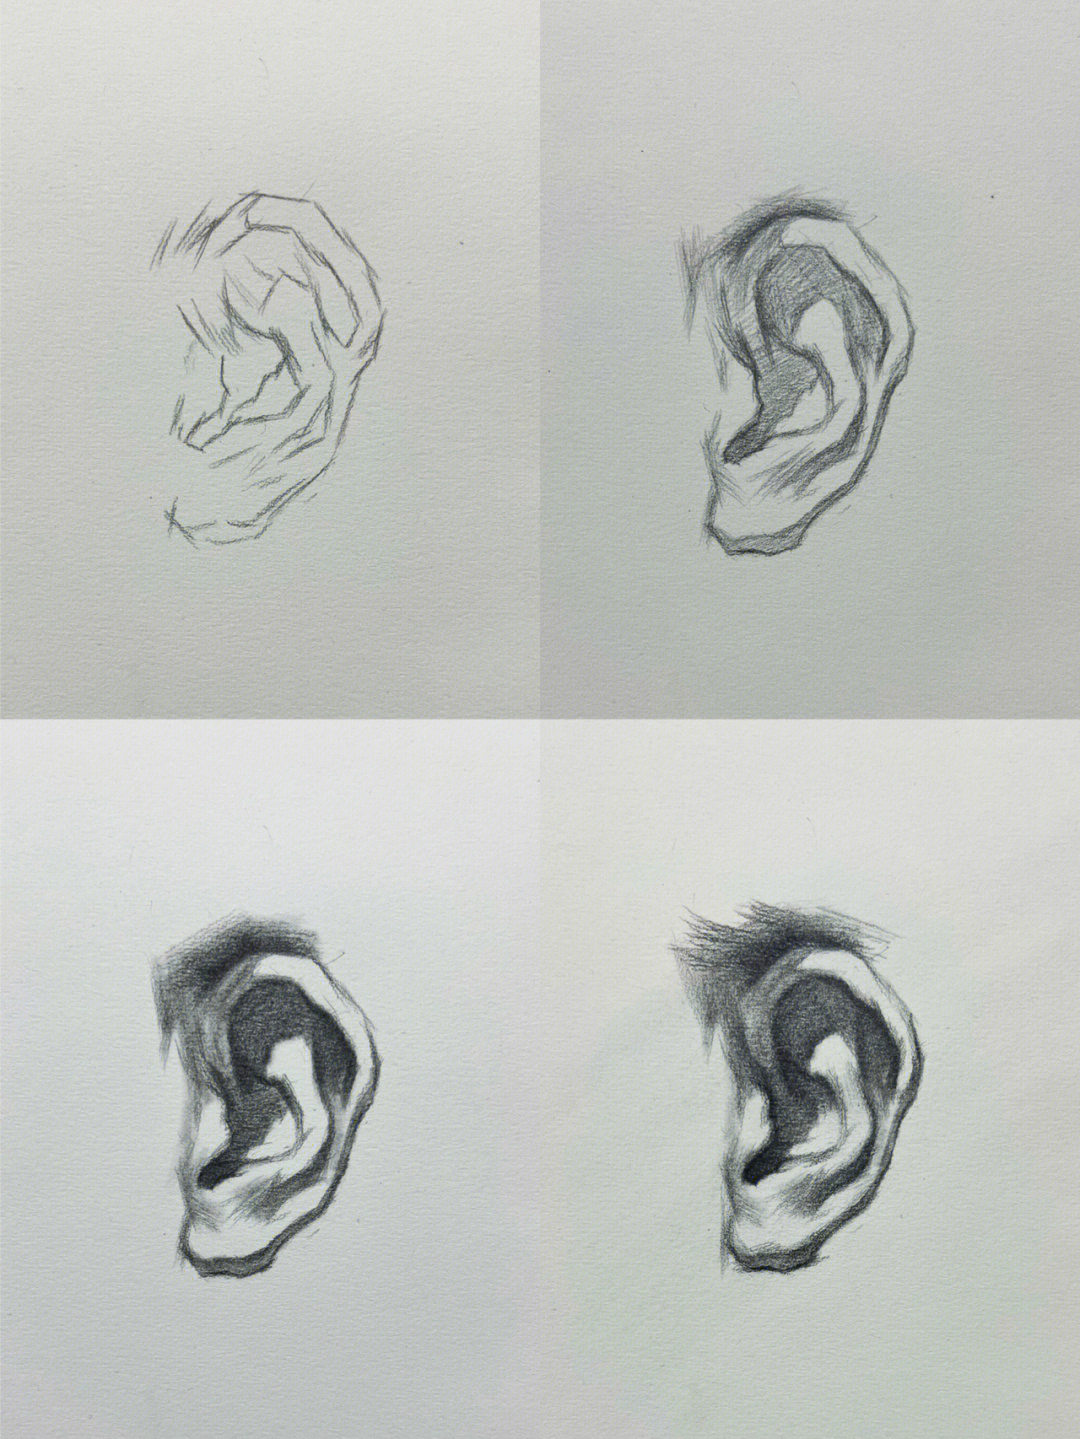 耳朵结构素描解析图片